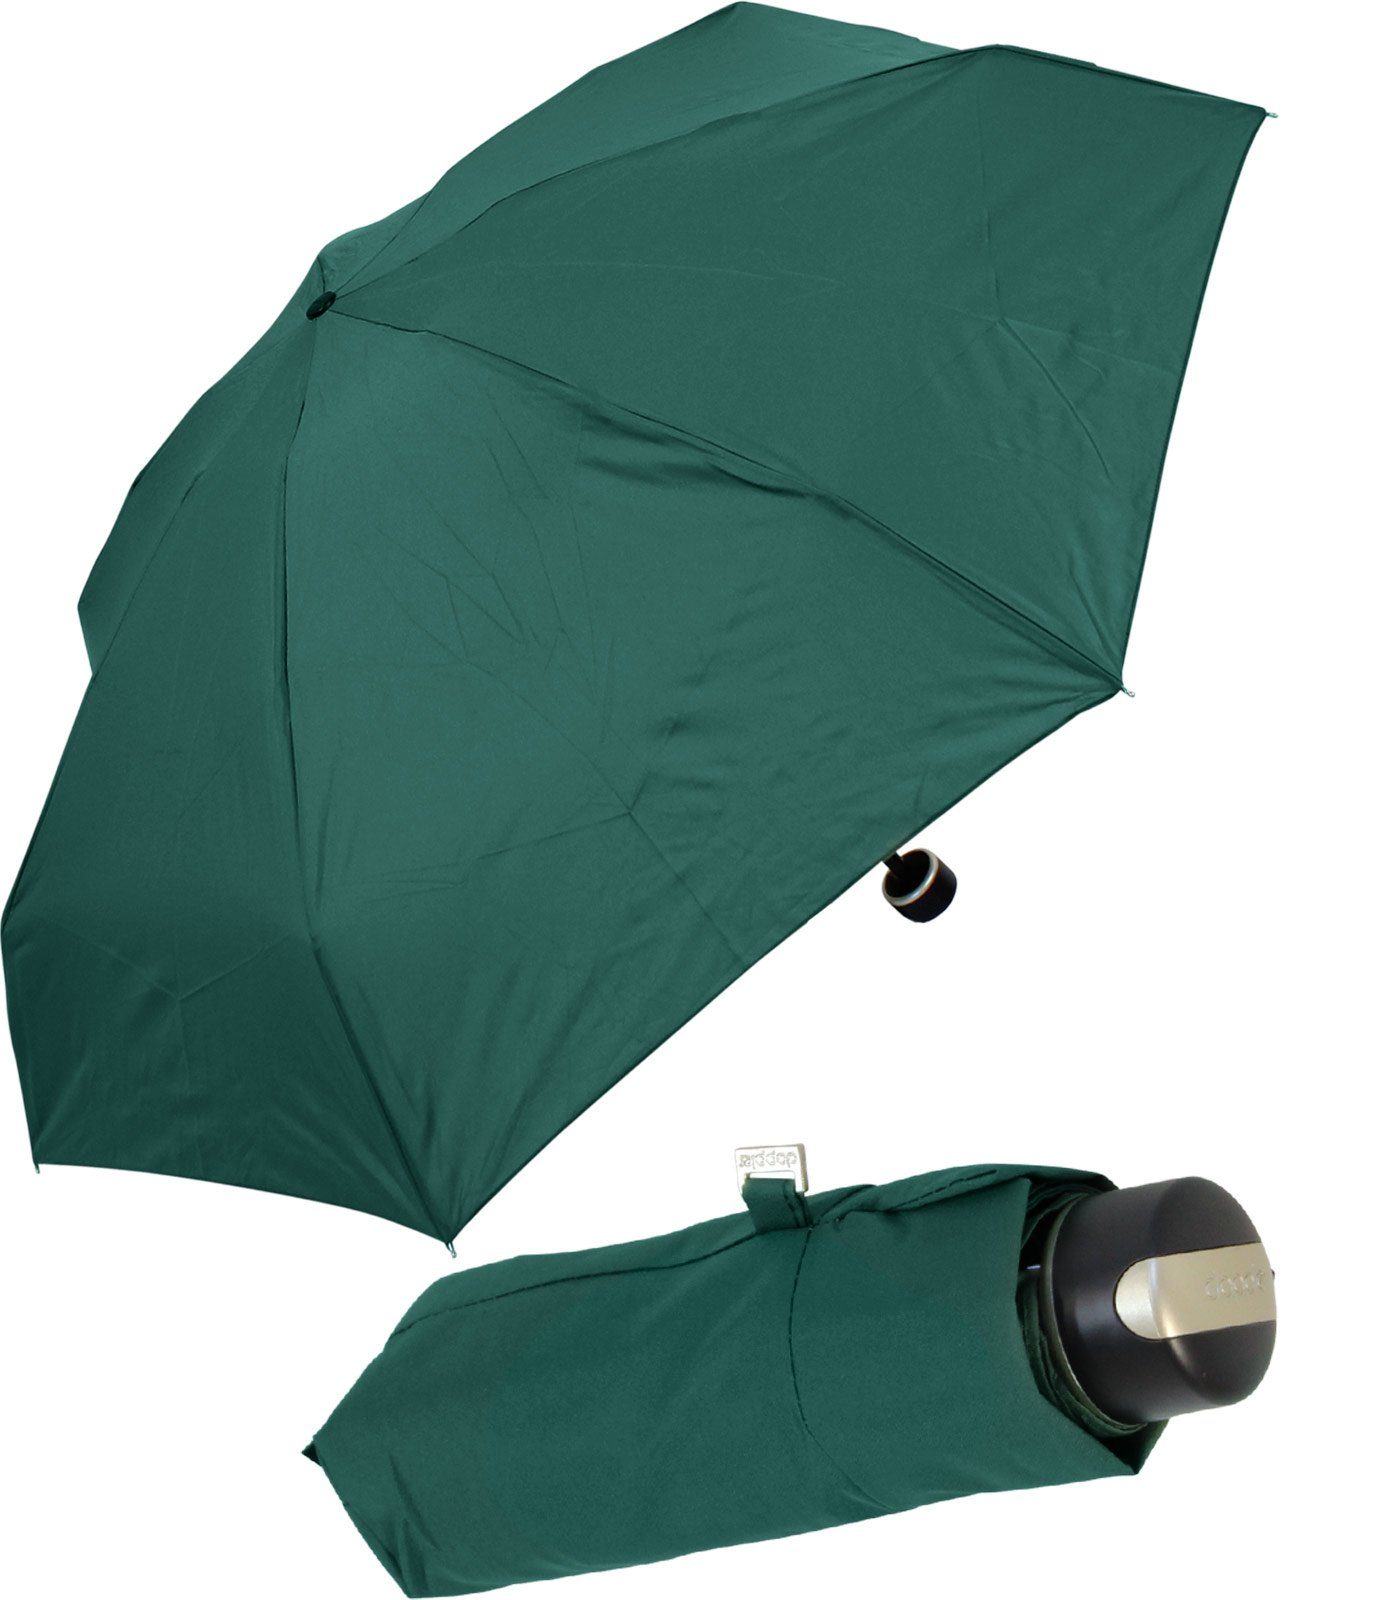 klein, Taschenregenschirm und Mini XS Carbonsteel verstauen leicht zu kompakt, doppler® Begleiter, der treue leicht